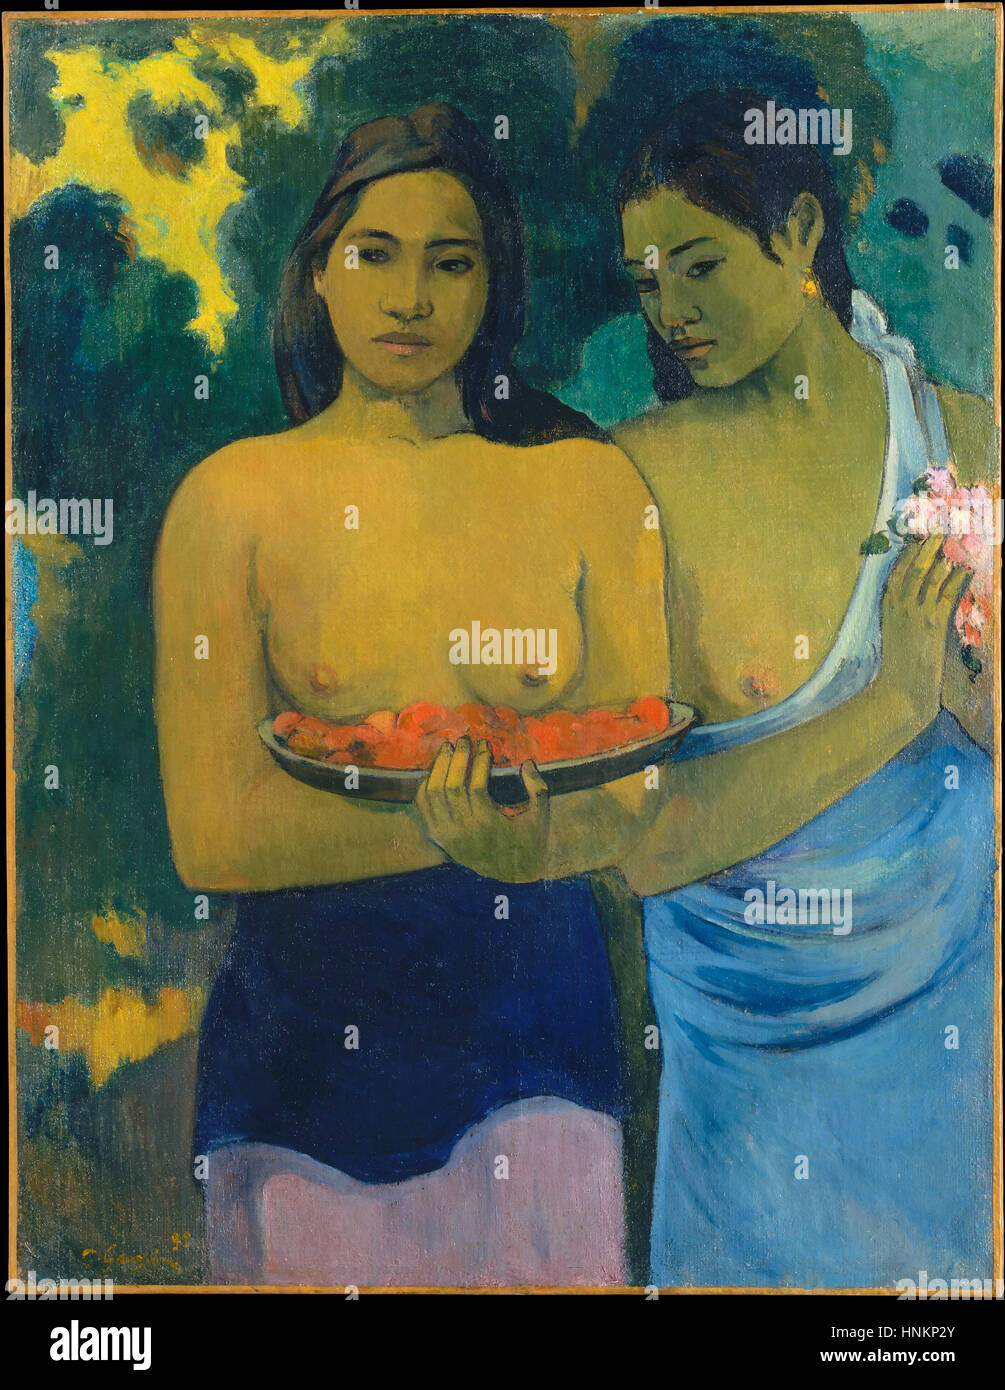 Two Tahitian Women by Paul Gauguin (1899) Stock Photo